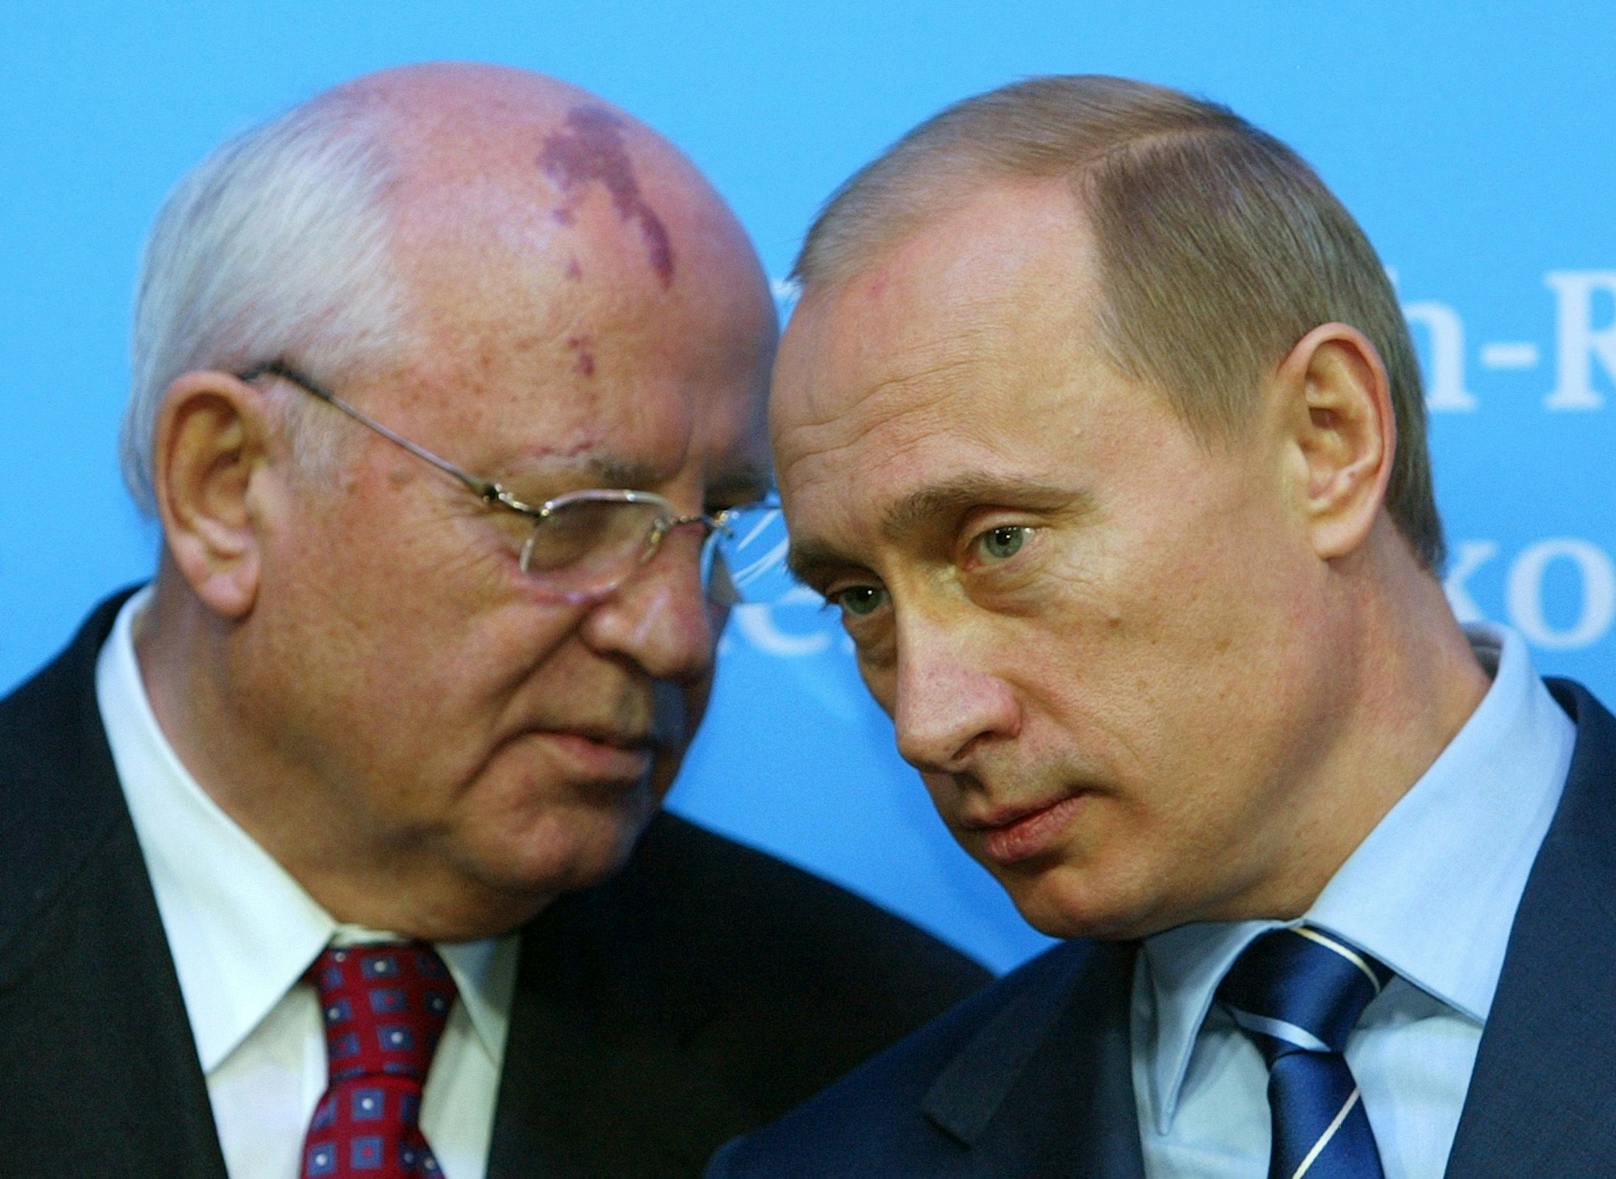 Michail Gorbatschow und Wladimir Putin während eines Deutschland-Besuchs bei dem damaligen Kanzler Schröder im Dezember 2004.